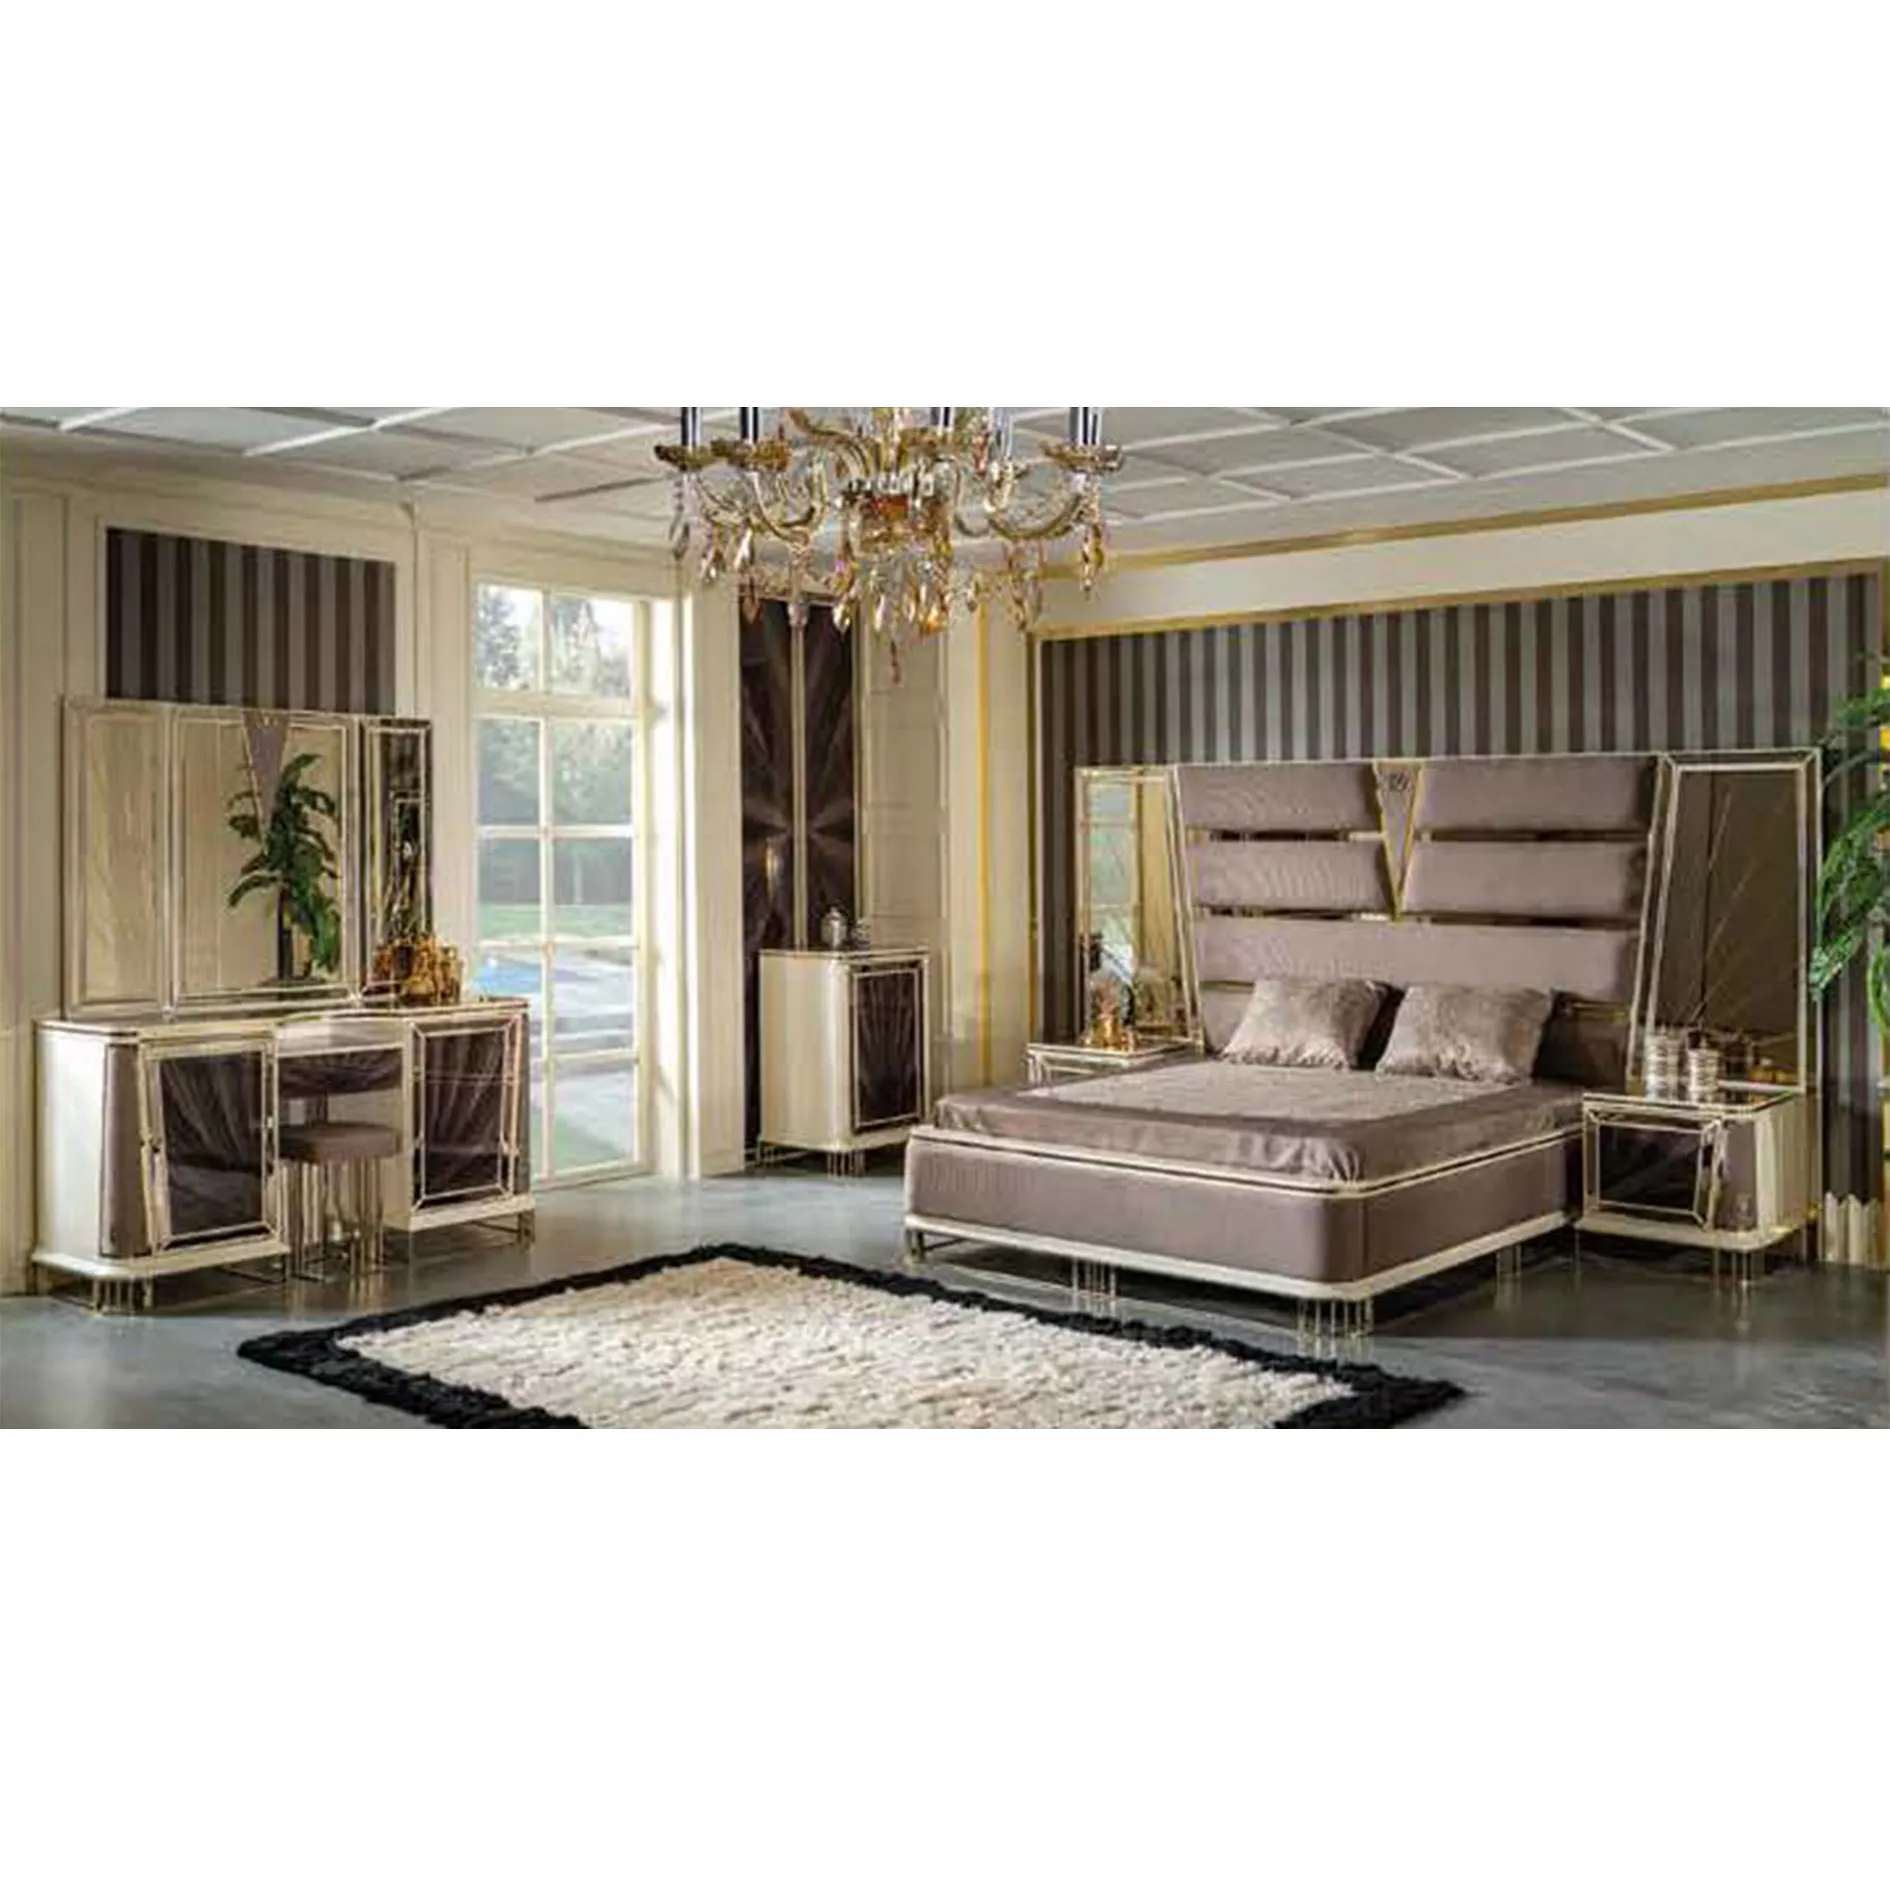 機能的なワードローブを備えた豪華な寝室の家具セットトルコの豪華な光沢のある家庭用家具トルコの家具KingSizeBed